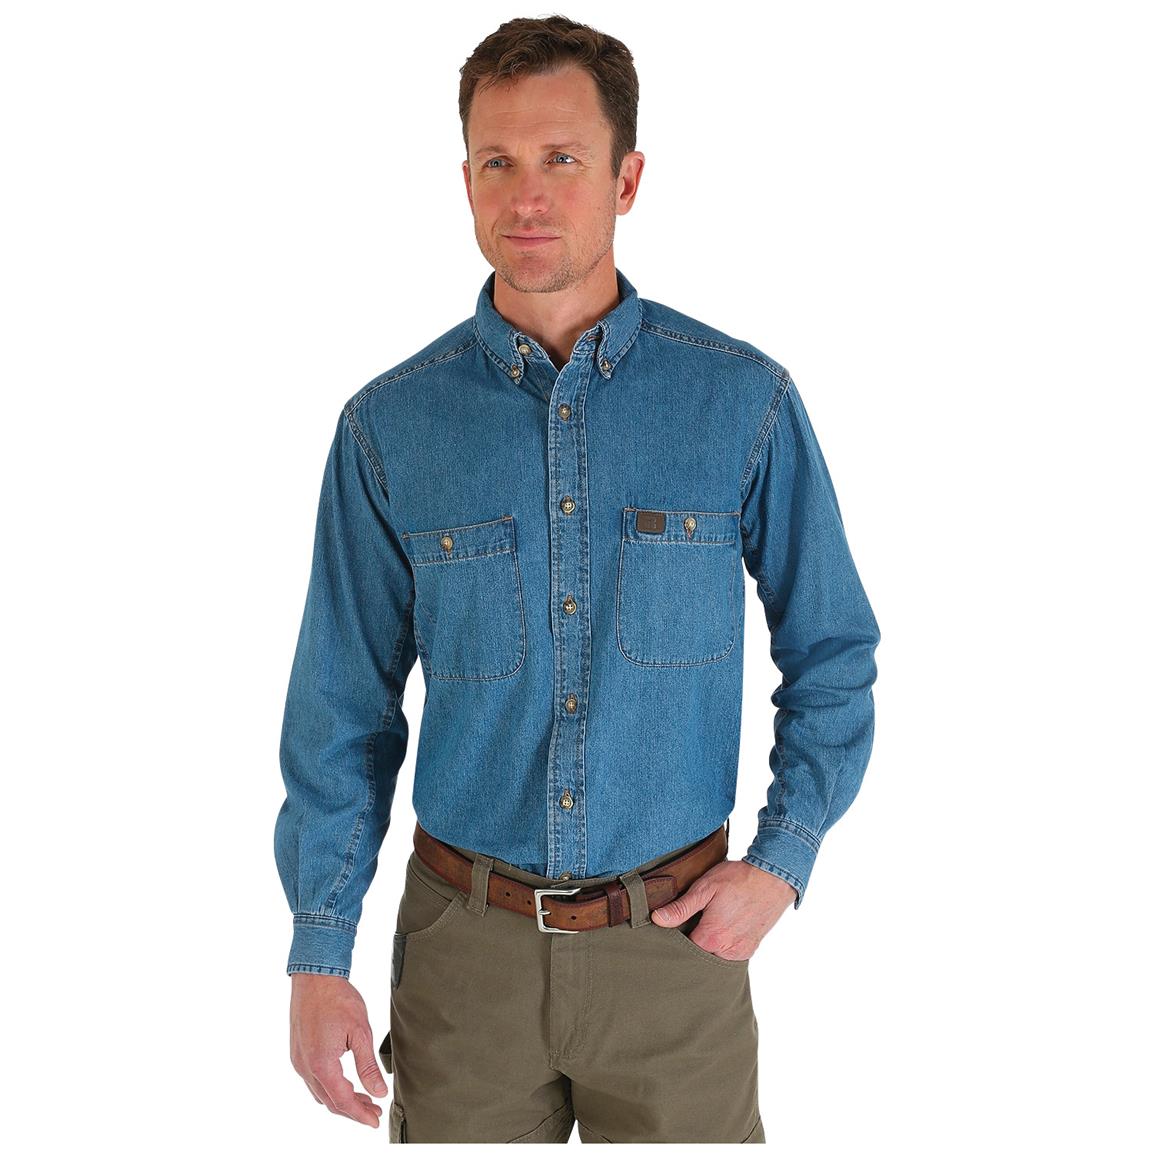 Wrangler RIGGS Workwear Men's Denim Work Shirt - 665401, Shirts at ...